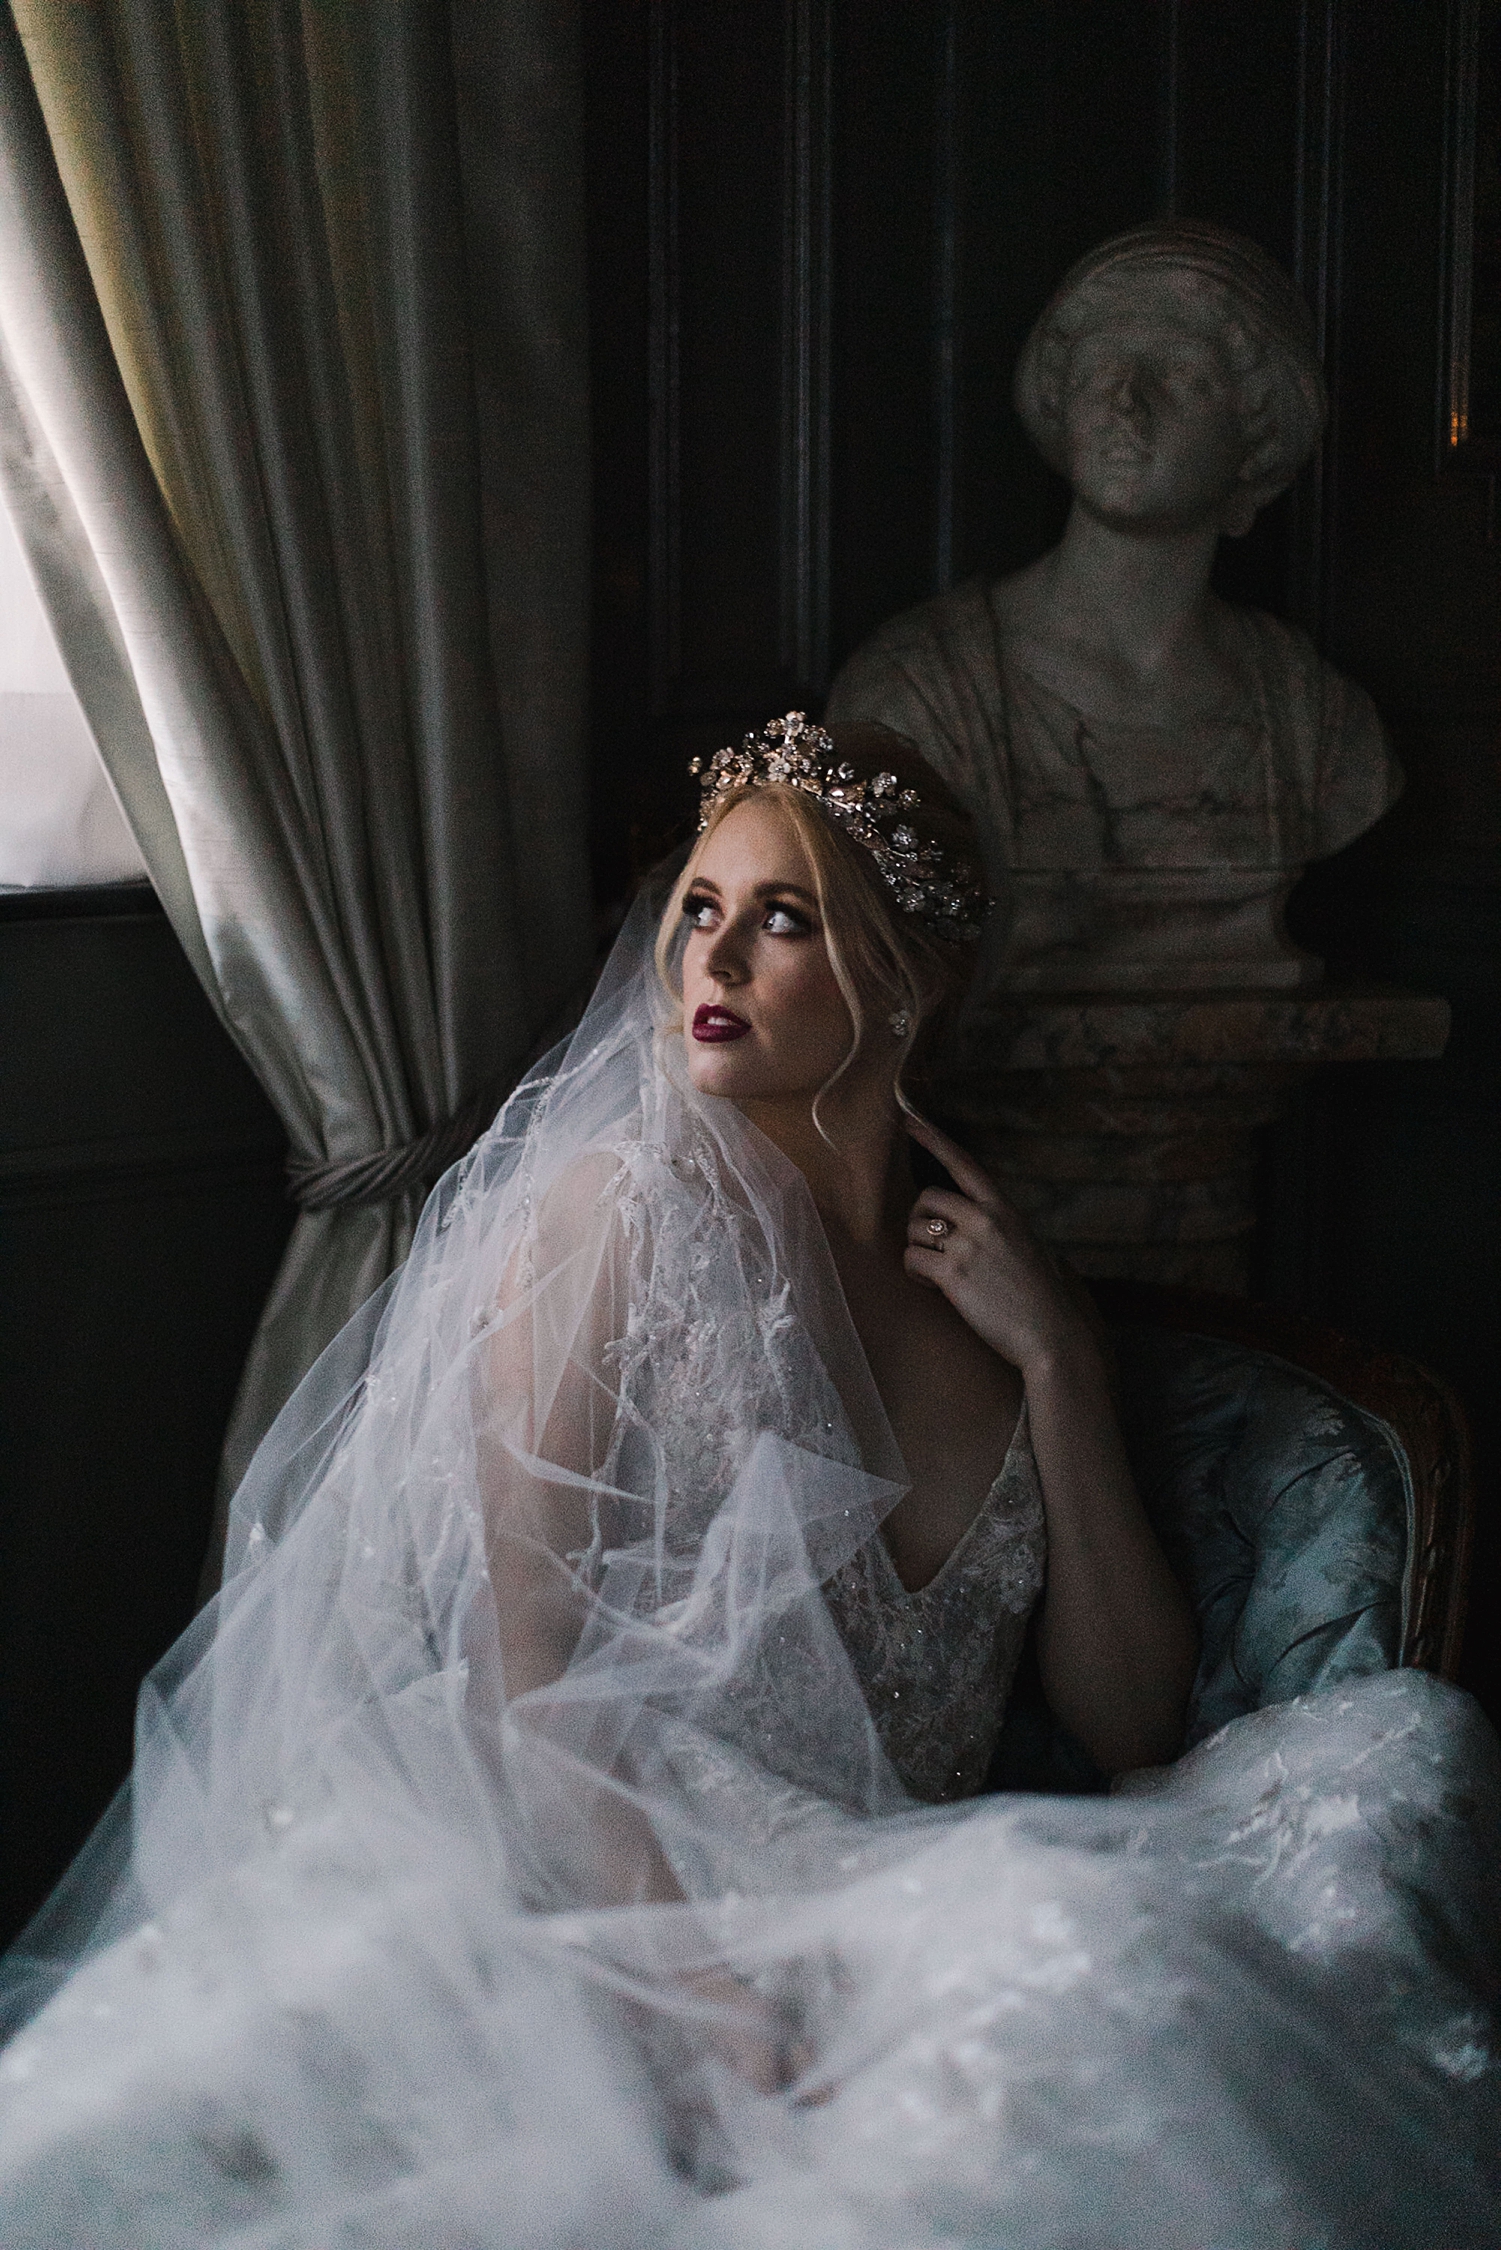 bride in wedding dress, crown, veil laying by window in dark room